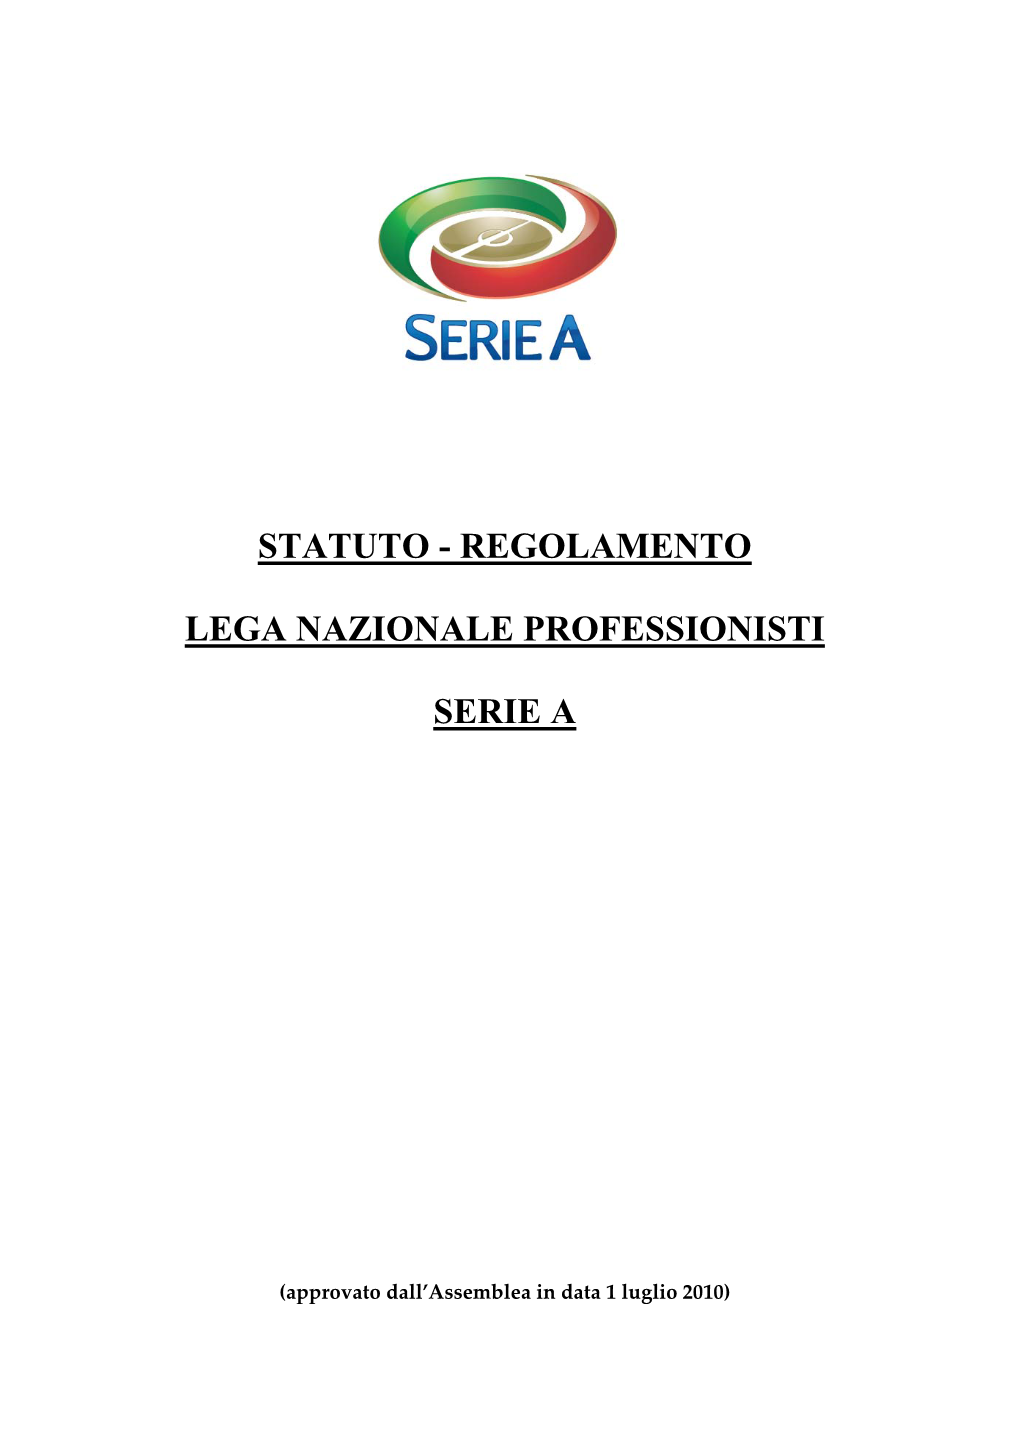 Regolamento Lega Nazionale Professionisti Serie A